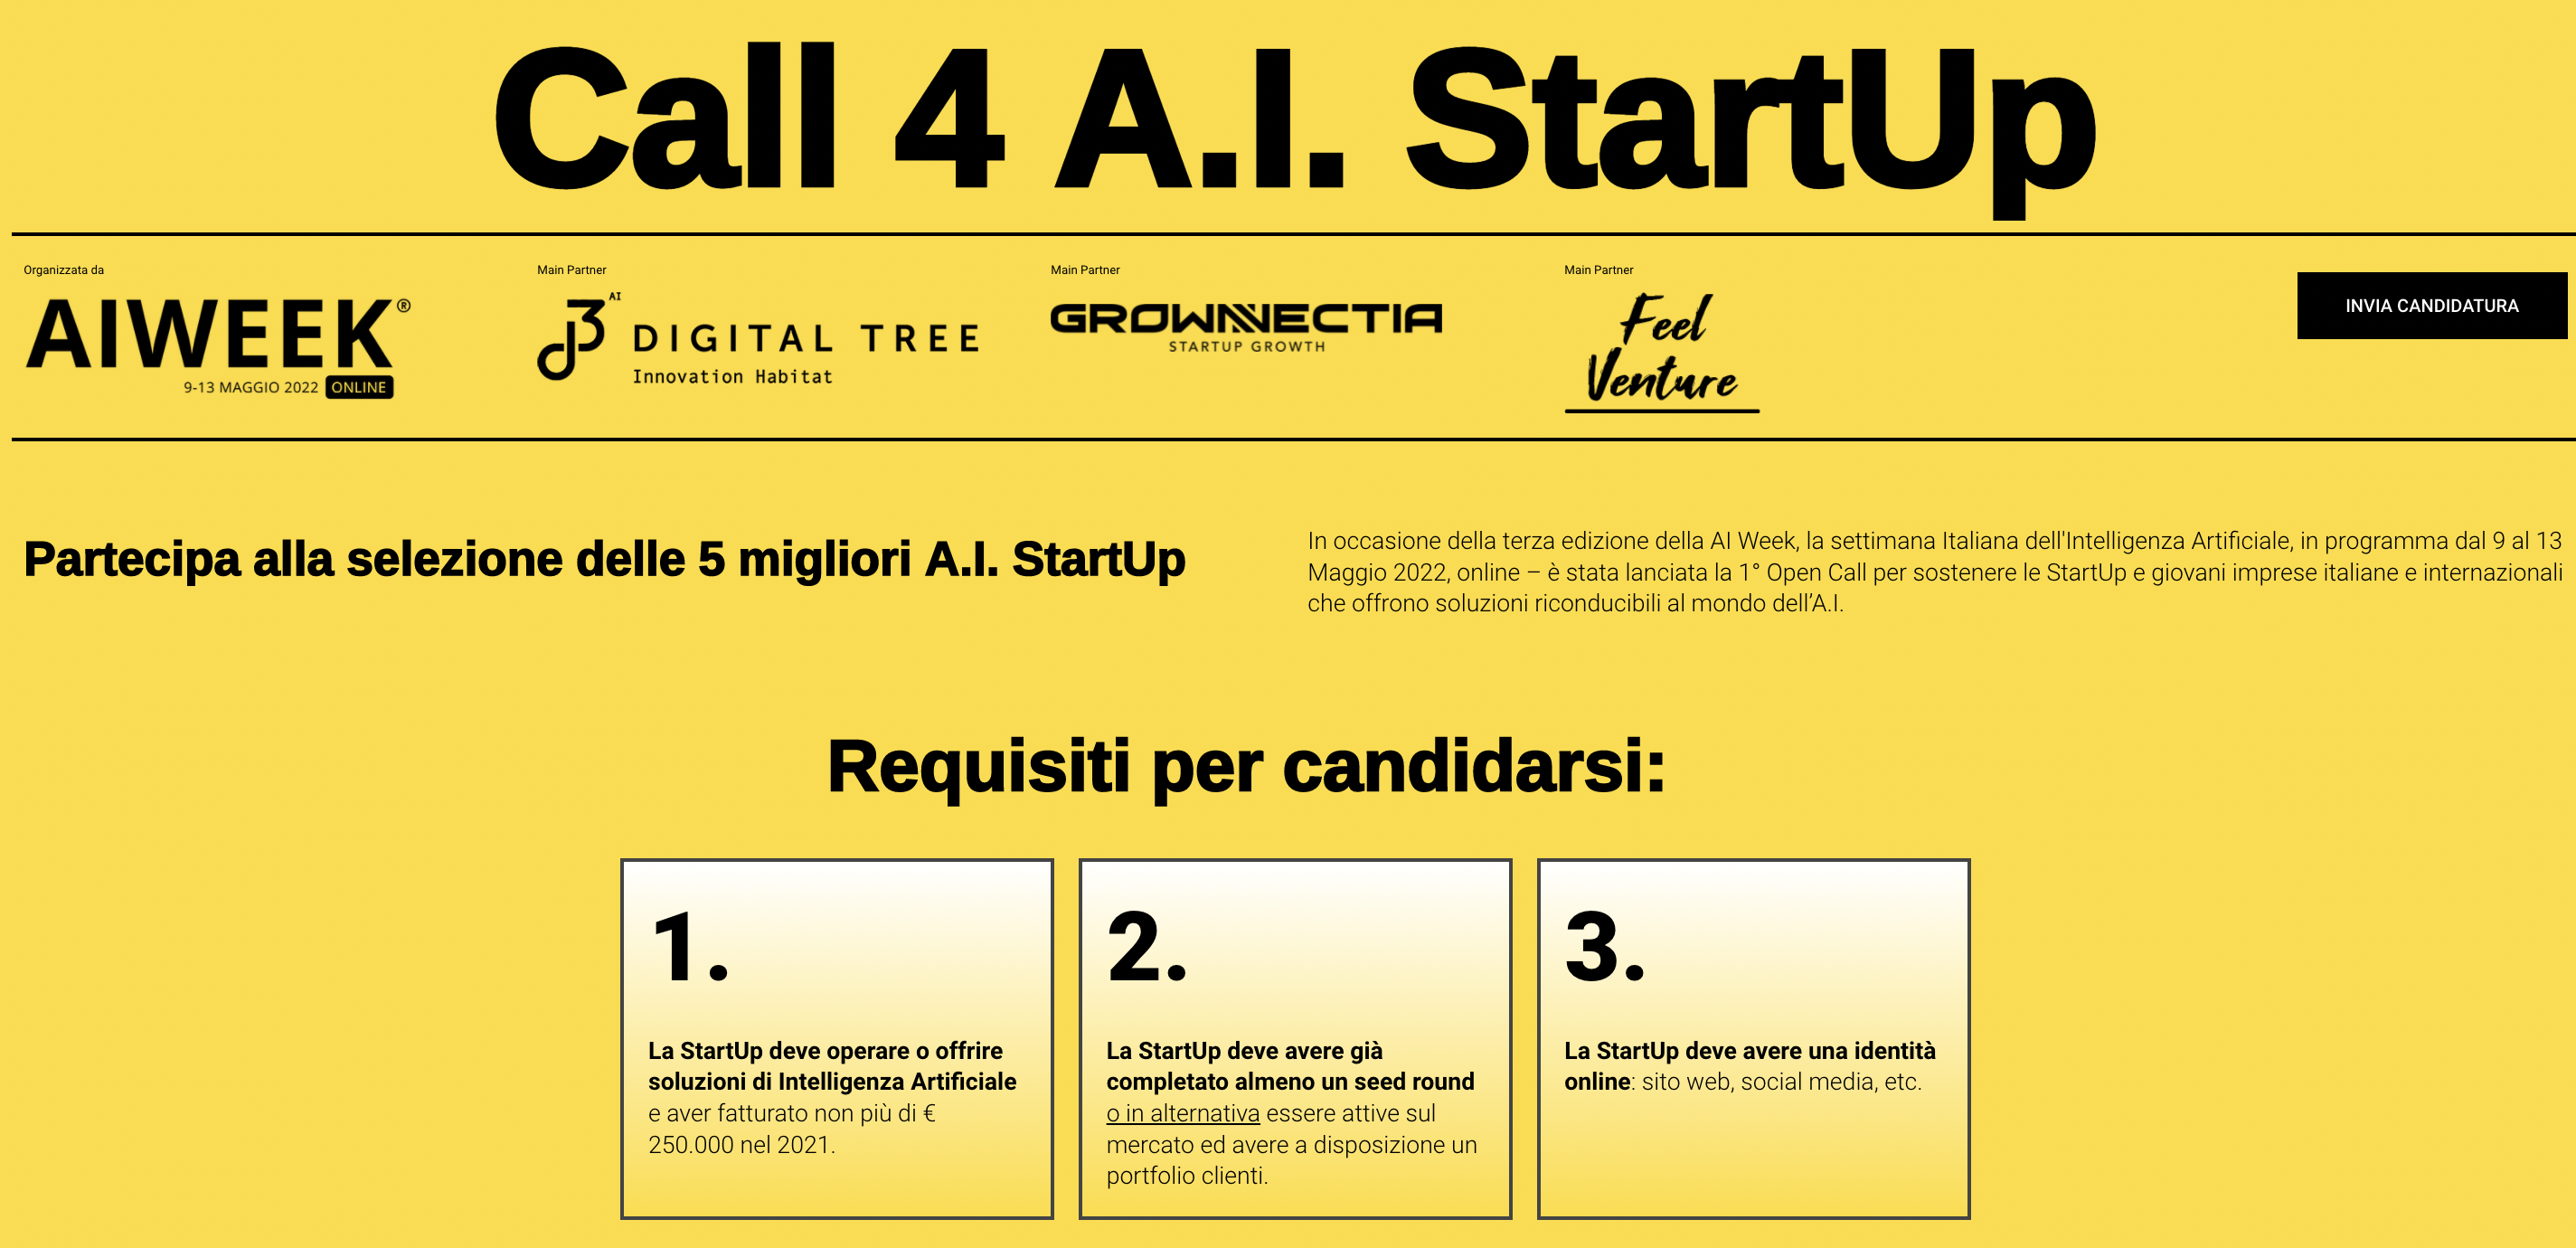 I 3 requisiti per candidarsi alla “Call 4 A.I. Startup” nell'ambito dell'edizione 2022 della "AI Week"